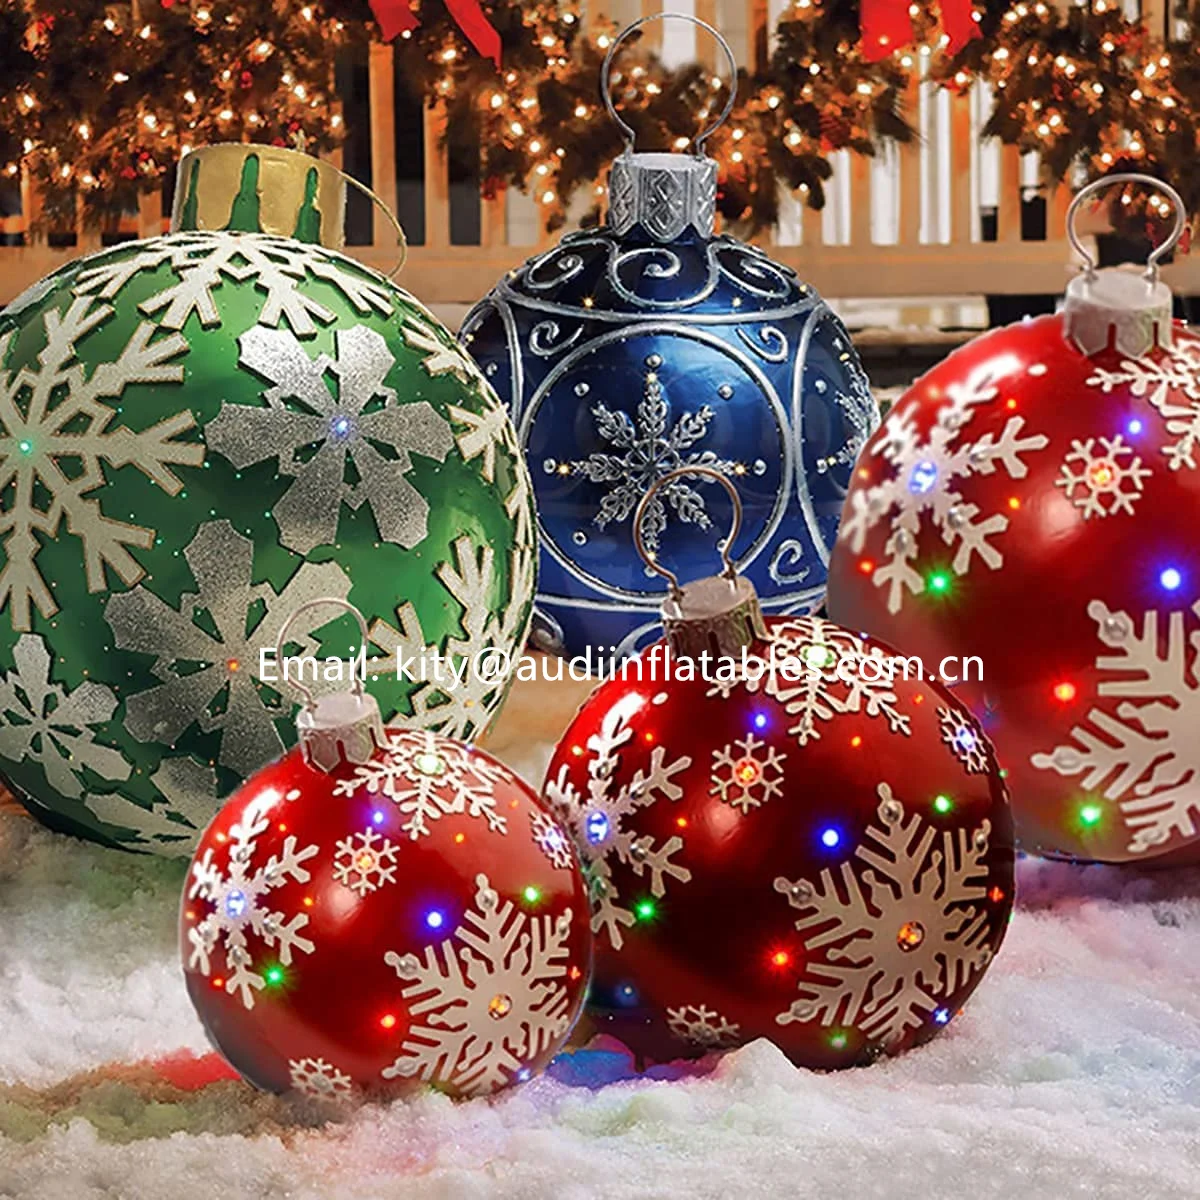 Funmix Bola Inflable de Navidad Decorada con Bomba Bolas de inflado de árbol de Navidad Decoraciones de jardín de Feliz Navidad Bola Inflable de Navidad Gigante para Exteriores 